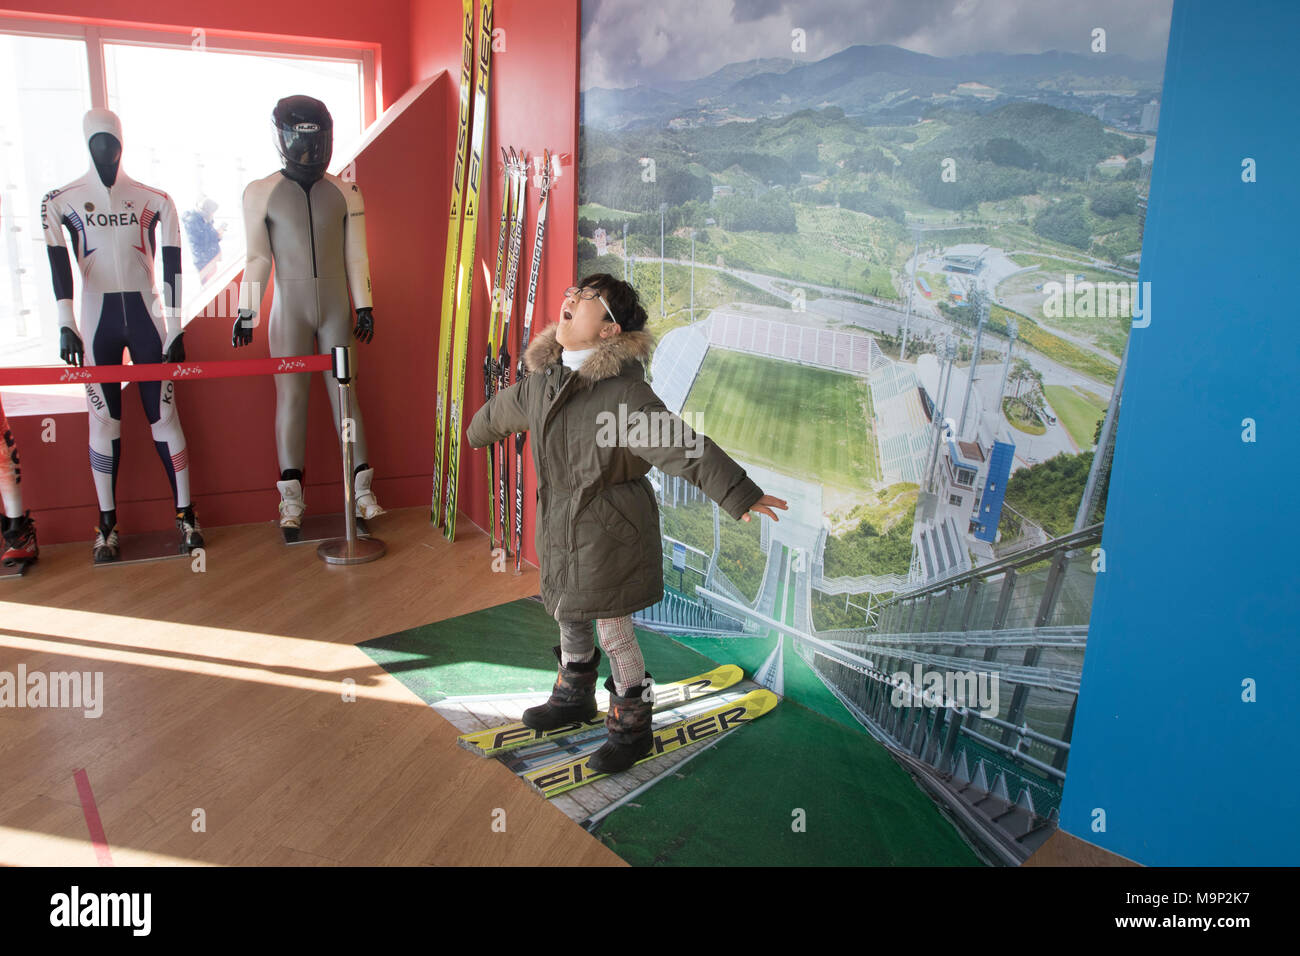 Un ragazzo giocando immaginario che egli è in volo durante un salto con gli sci a Olympic ski jumping torre di Alpensia resort in Corea del Sud. Il Alpensia Resort è una località sciistica e una attrazione turistica. Esso si trova sul territorio del comune di Daegwallyeong-myeon, nella contea di Pyeongchang, ospitando le Olimpiadi Invernali nel febbraio 2018. La stazione sciistica è di circa 2 ore e mezzo da Seoul o dall'Aeroporto di Incheon in auto, prevalentemente tutti autostrada. Alpensia dispone di 6 piste per lo sci e lo snowboard, con corse fino a 1,4 km (0,87 mi) lungo, per principianti e progrediti, e un'area riservata Foto Stock